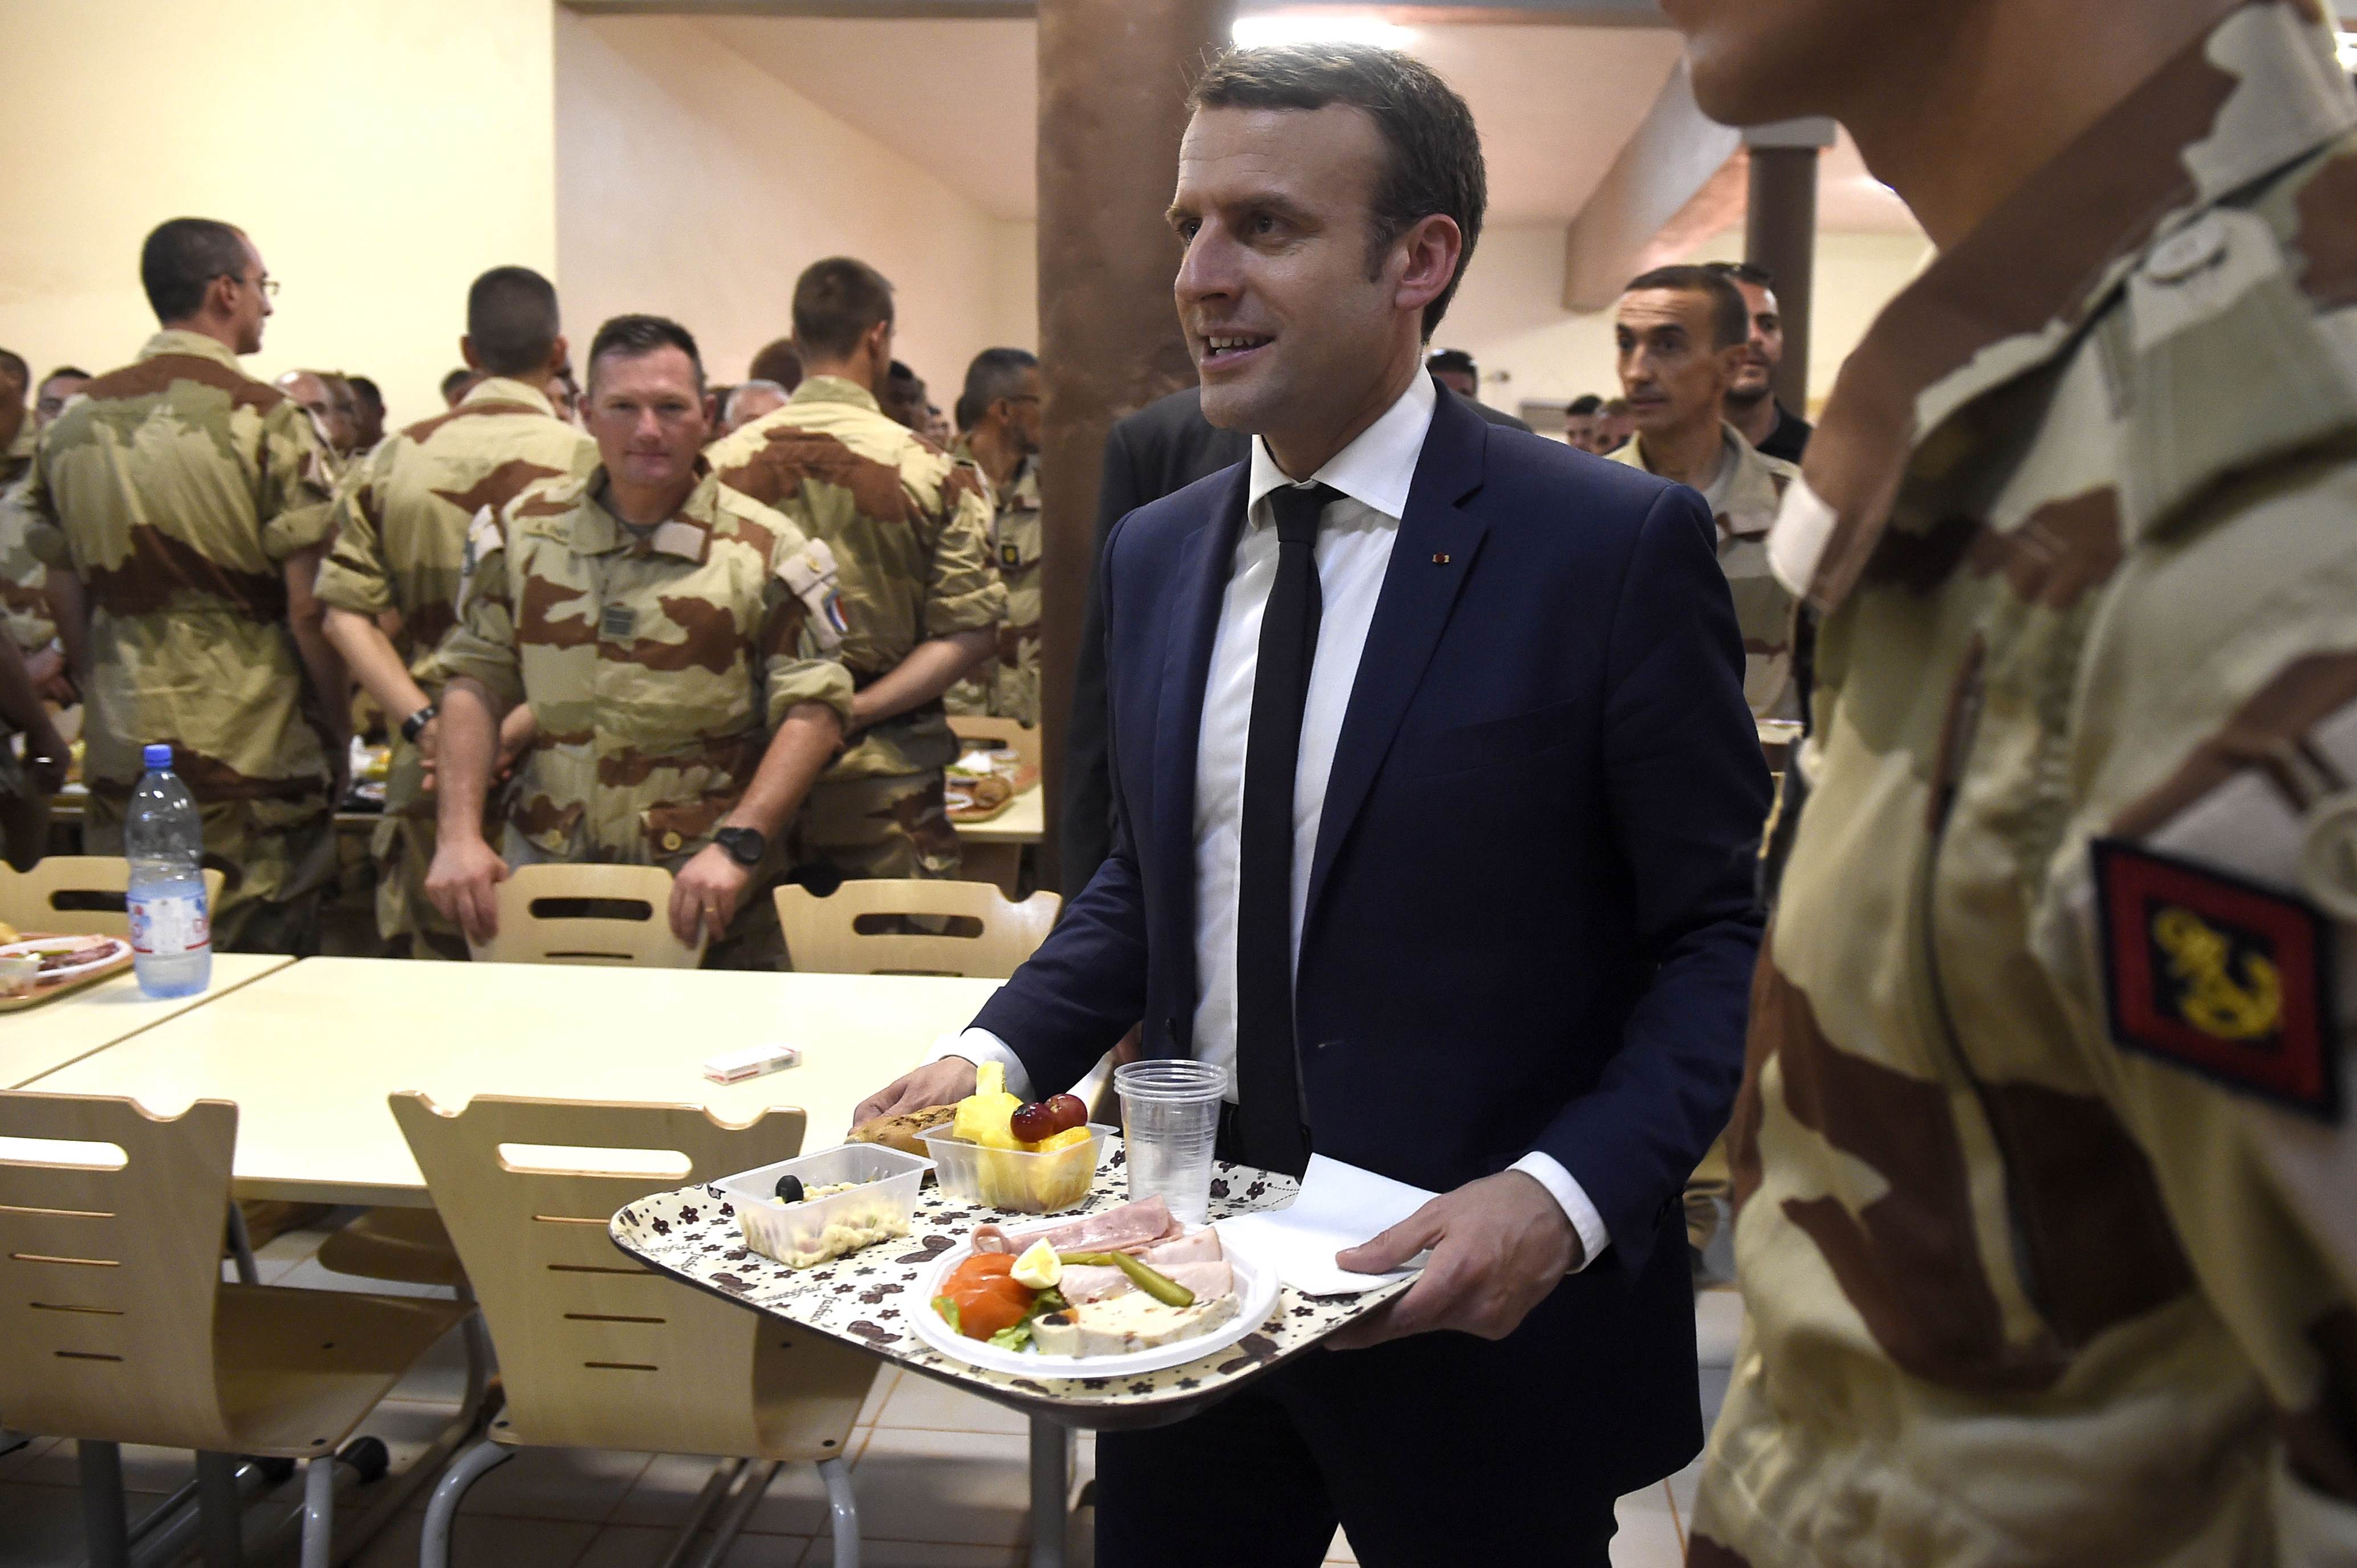 الرئيس الفرنسى يأخذ طعامه